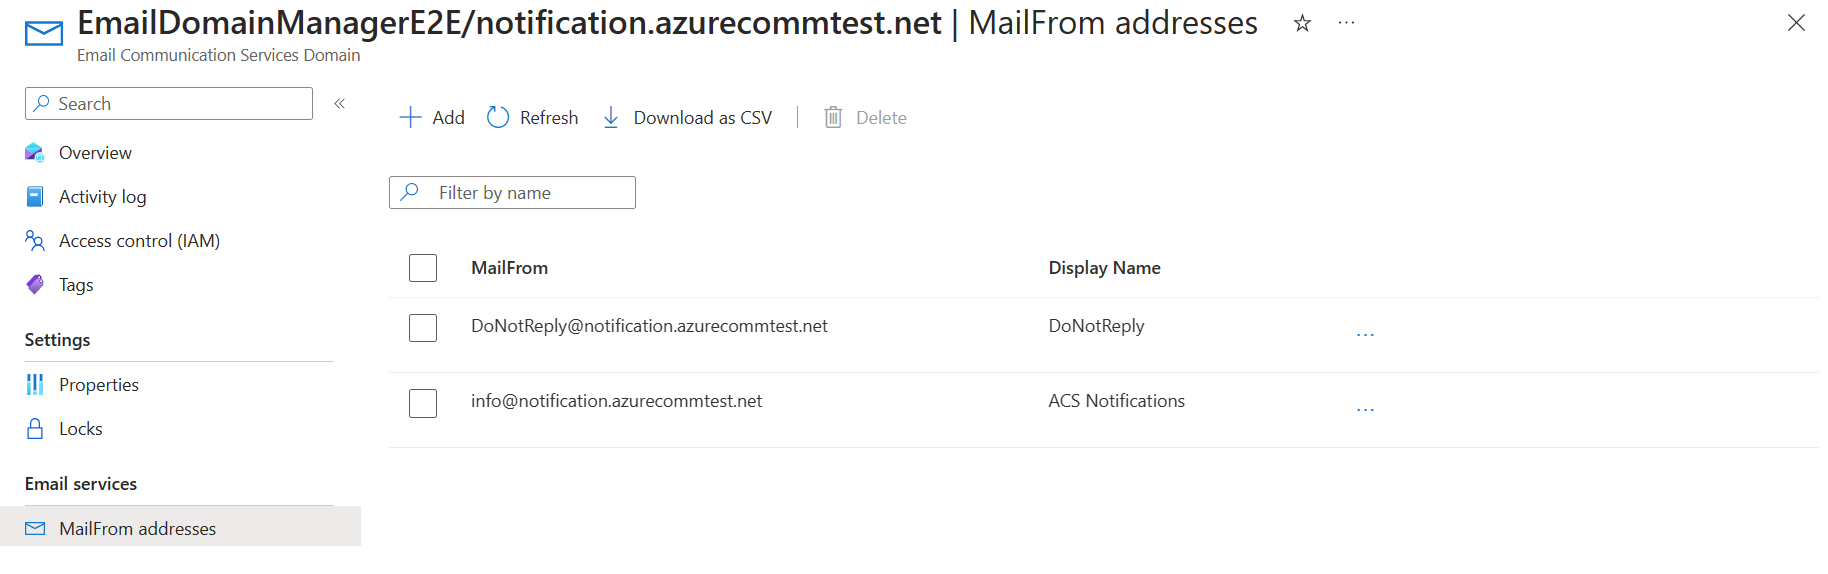 Capture d’écran montrant la liste d’adresses Mailfrom avec des valeurs mises à jour.